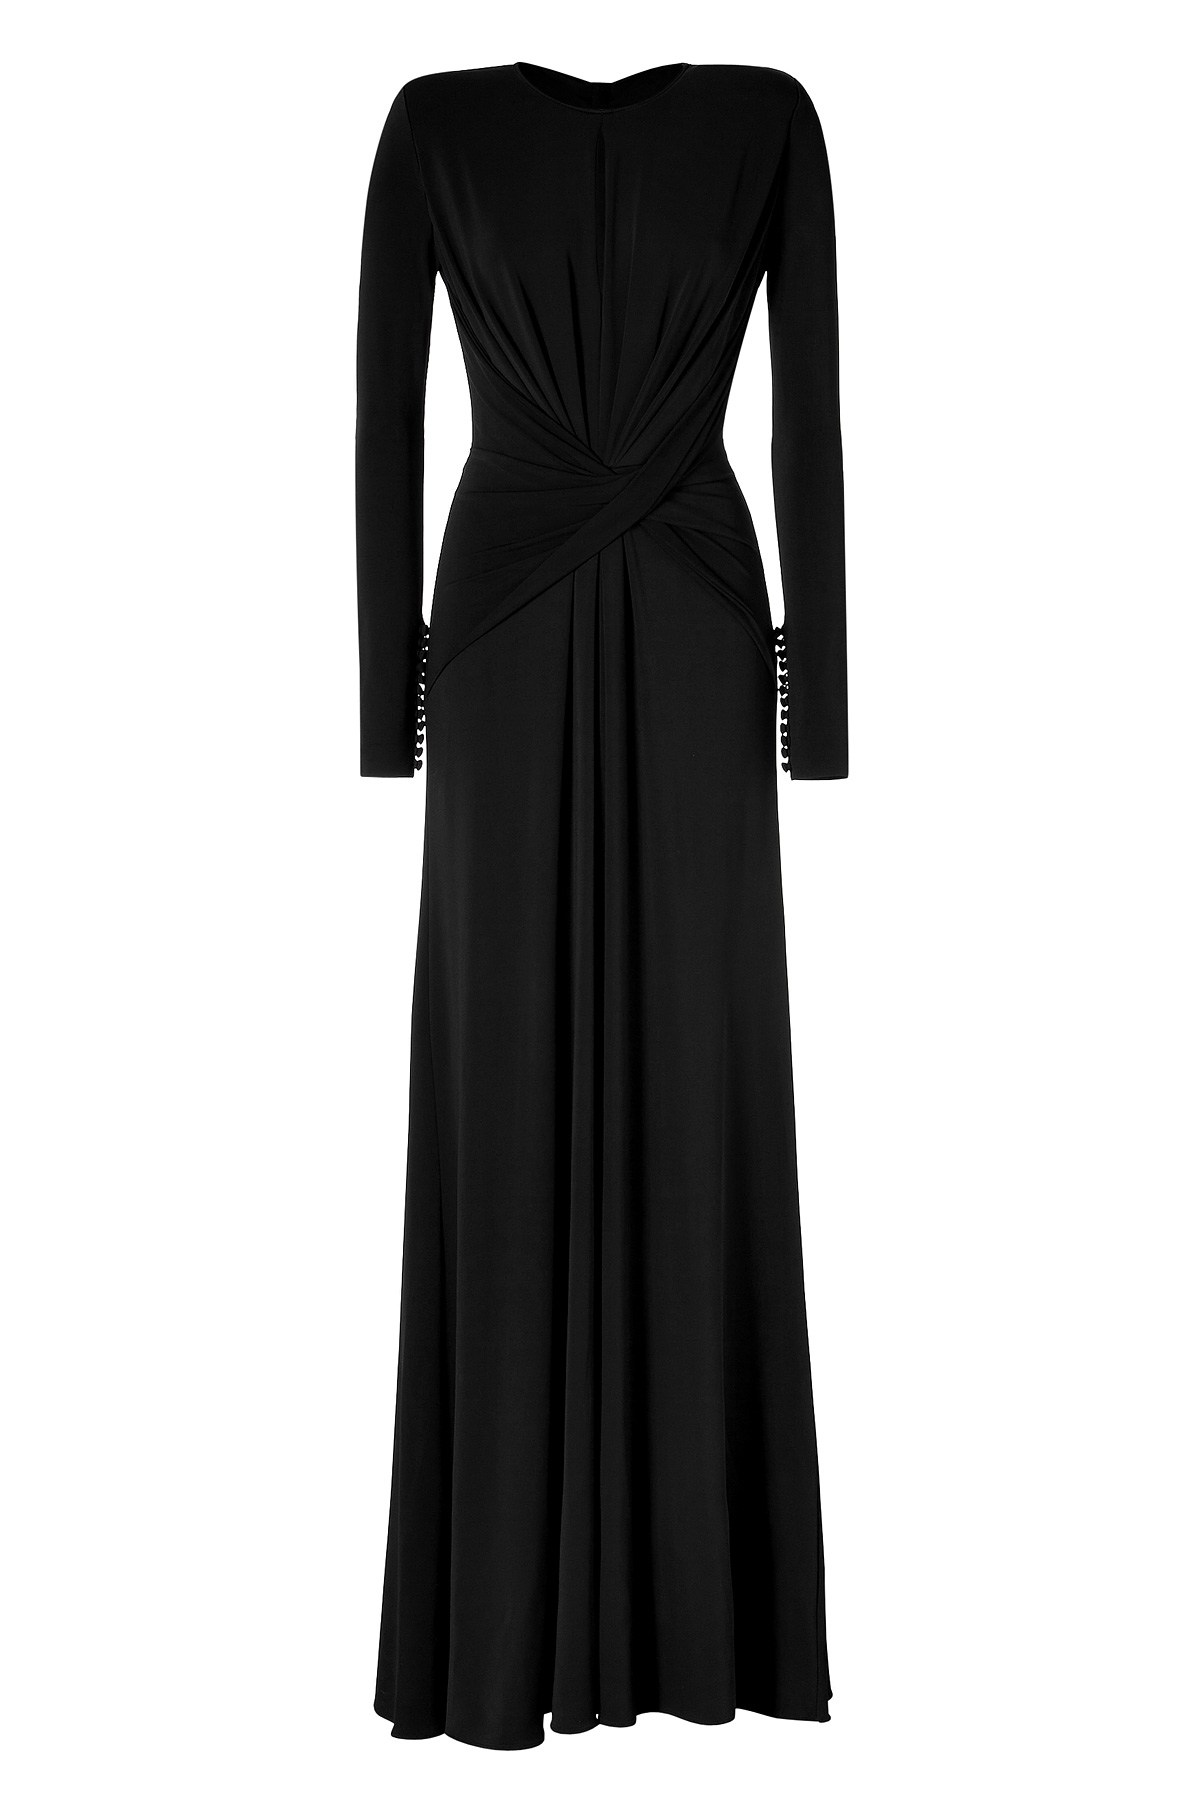 Lyst - Elie Saab Draped Gown In Black in Black